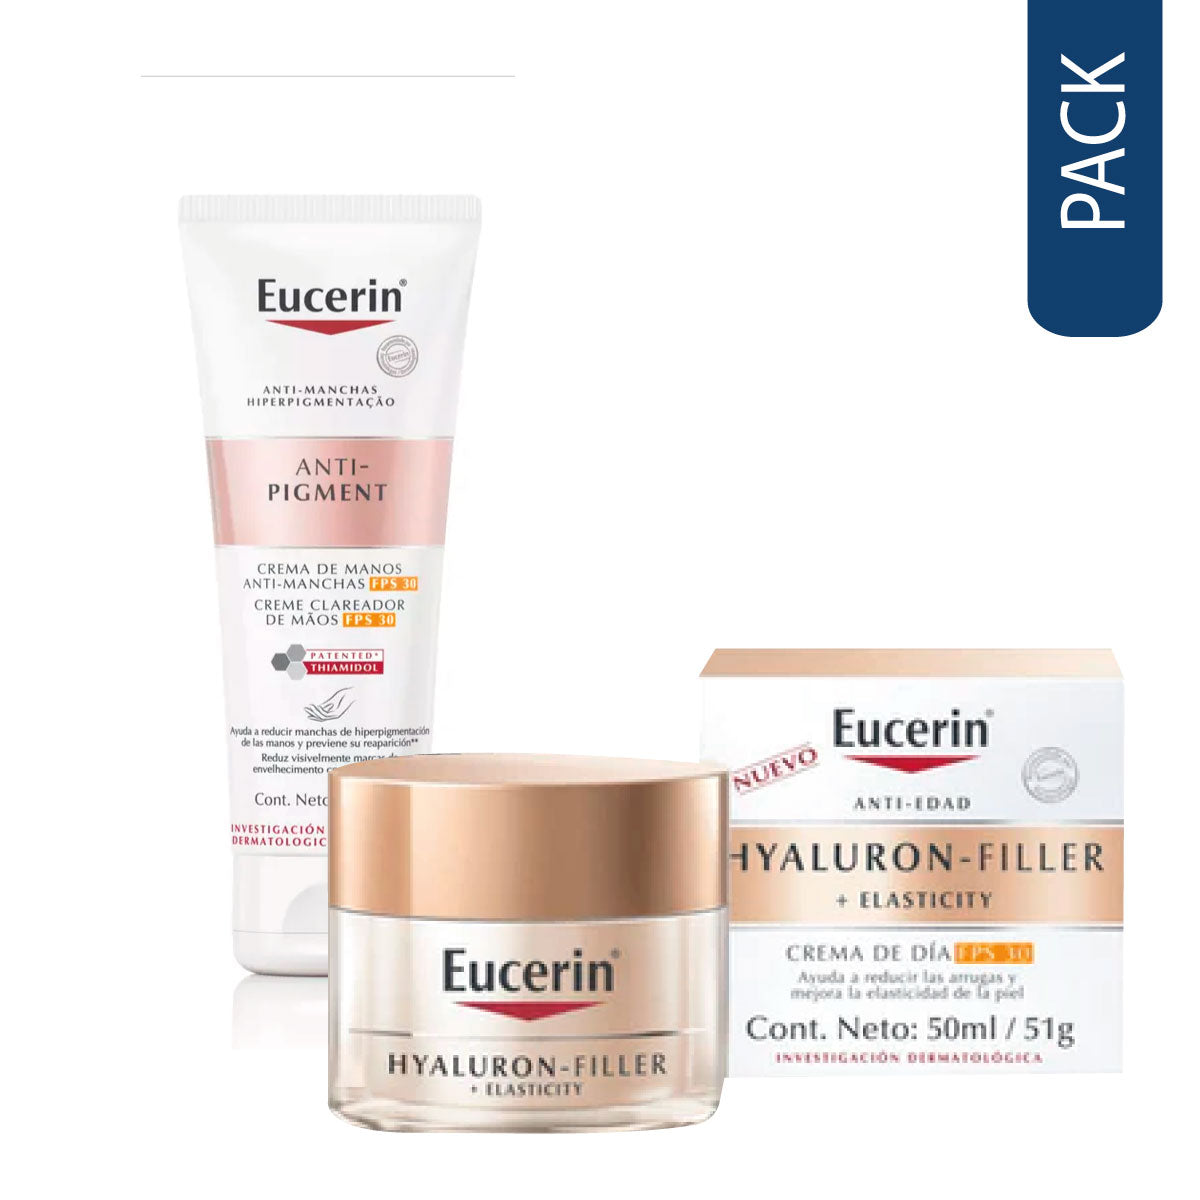 Pack Crema De Dia Con Fps 30  Eucerin Hyaluron-Filler + Elasticity y Crema de Manos Anti-Pigment